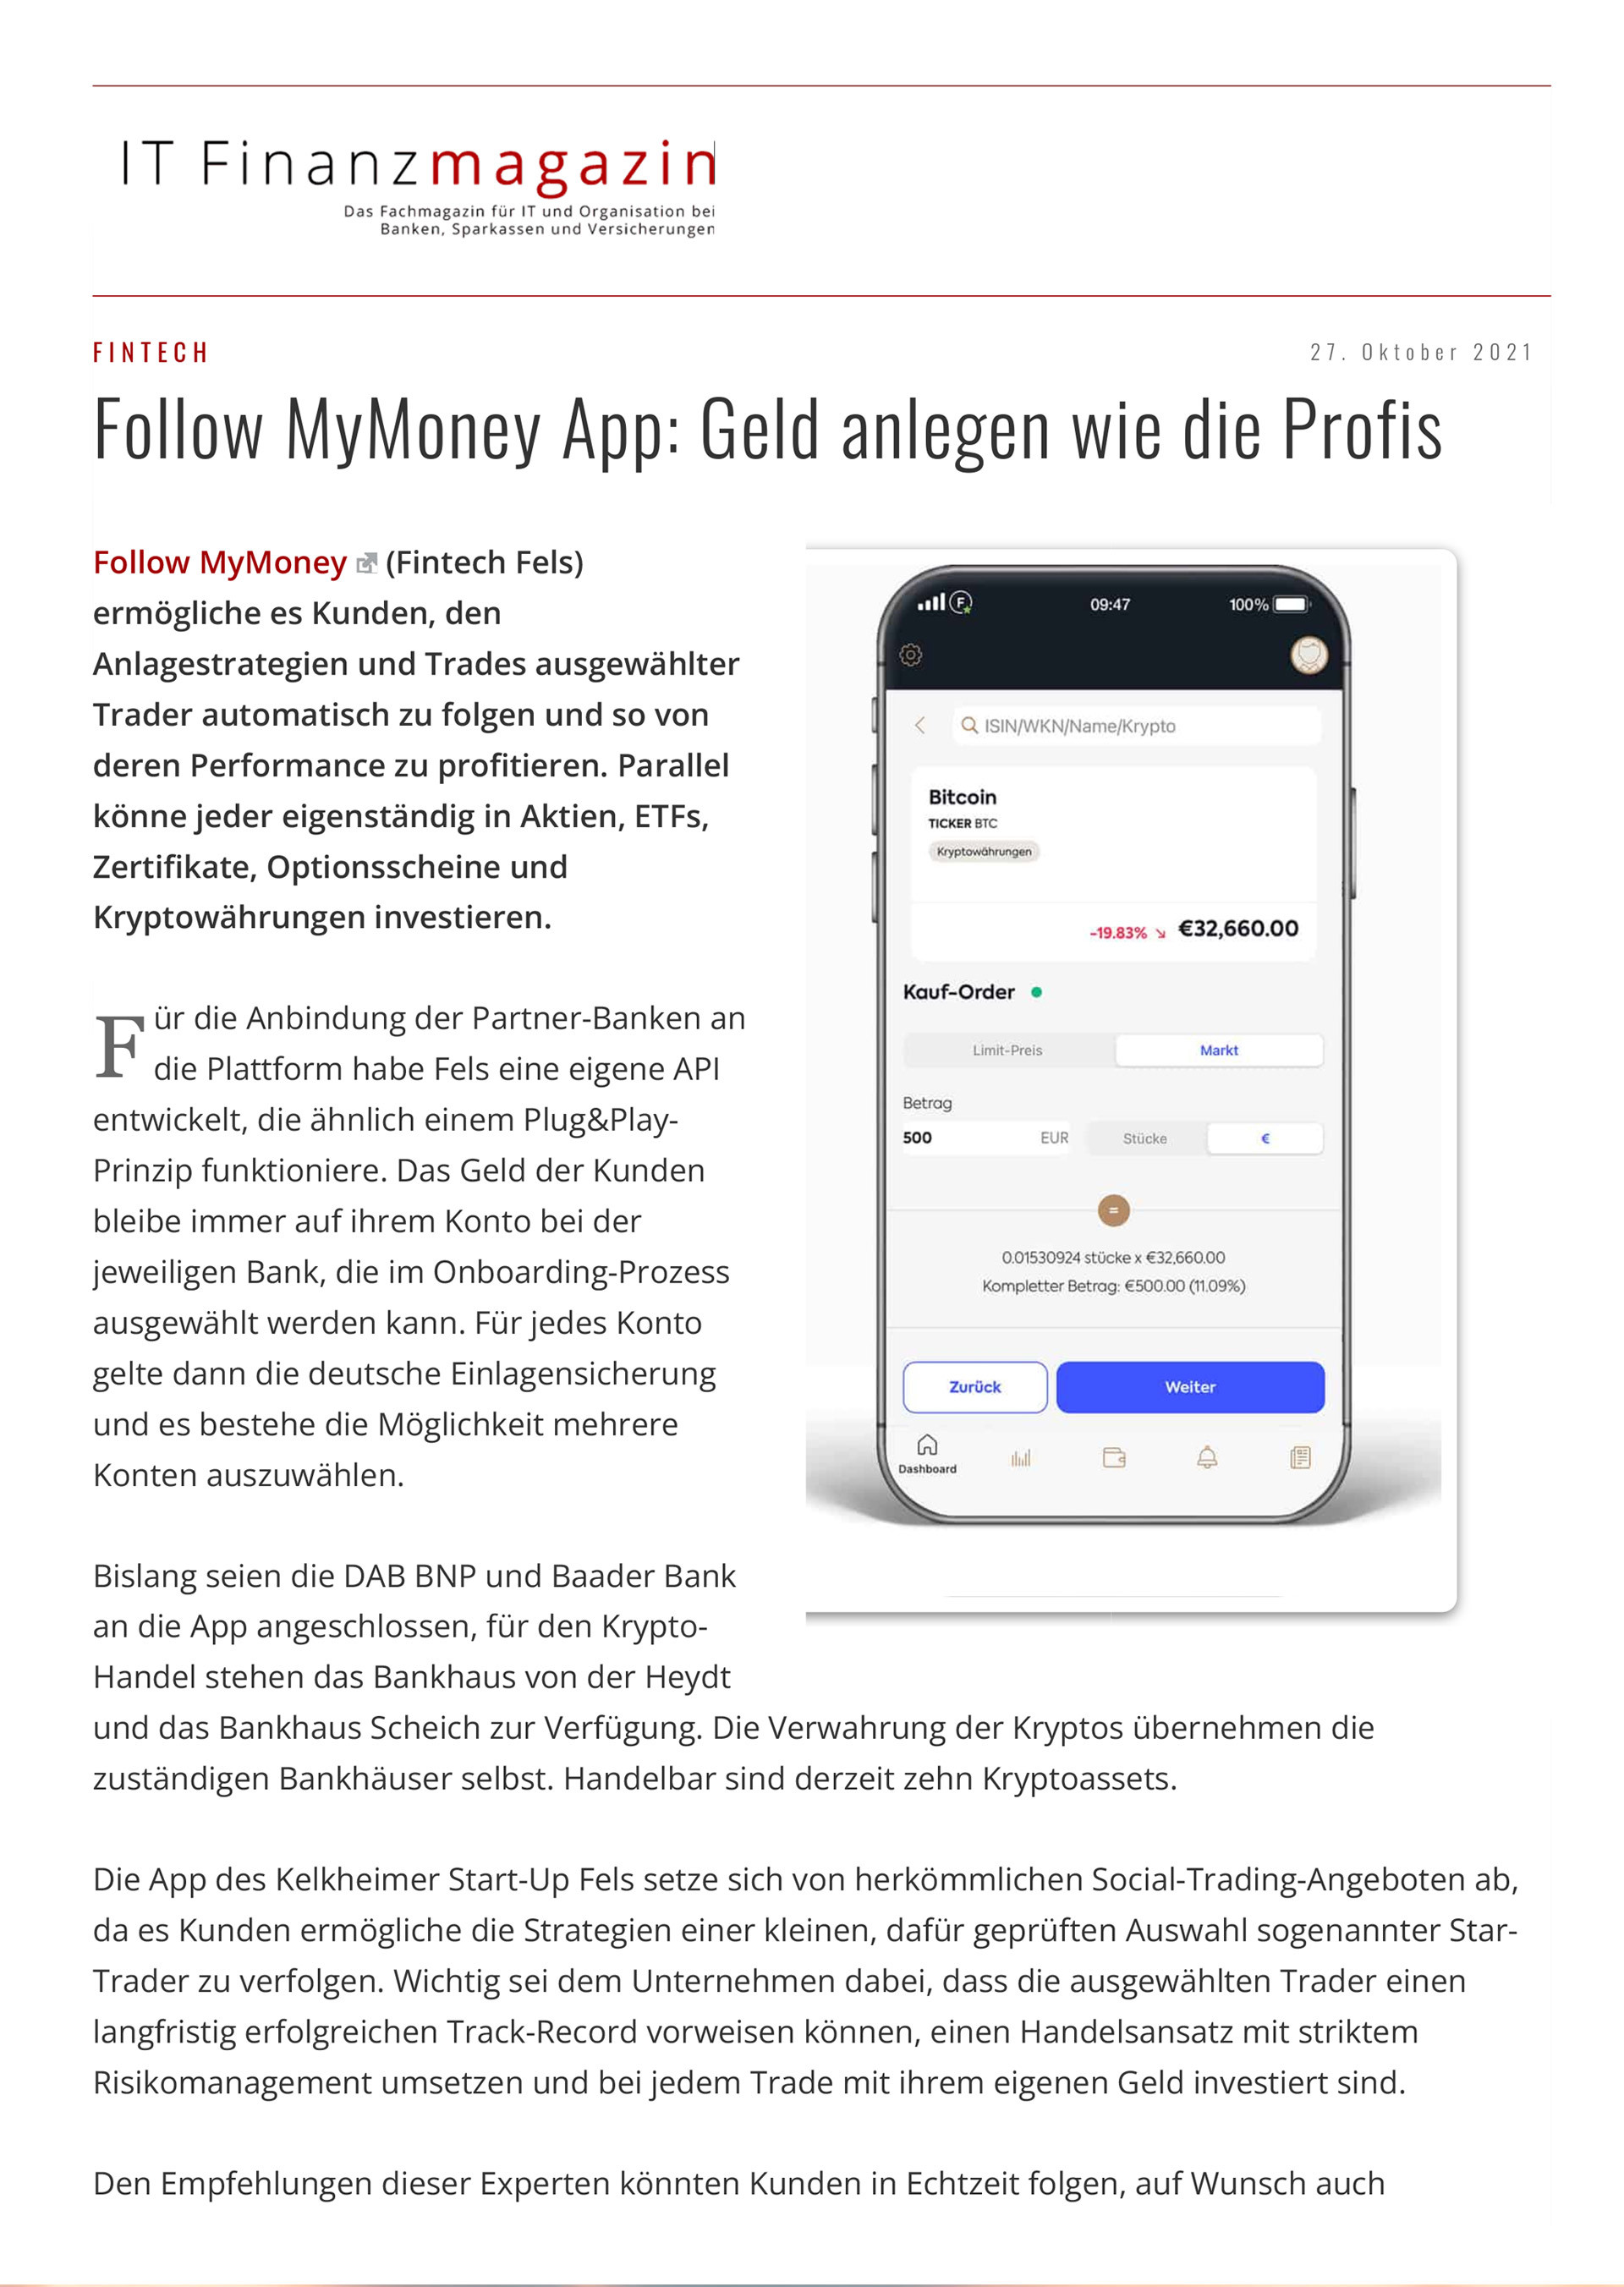 Artikel im IT Finanzmagazin vom 27.10.2021 Follow MyMoney App: Geldanlagen wie die Profis